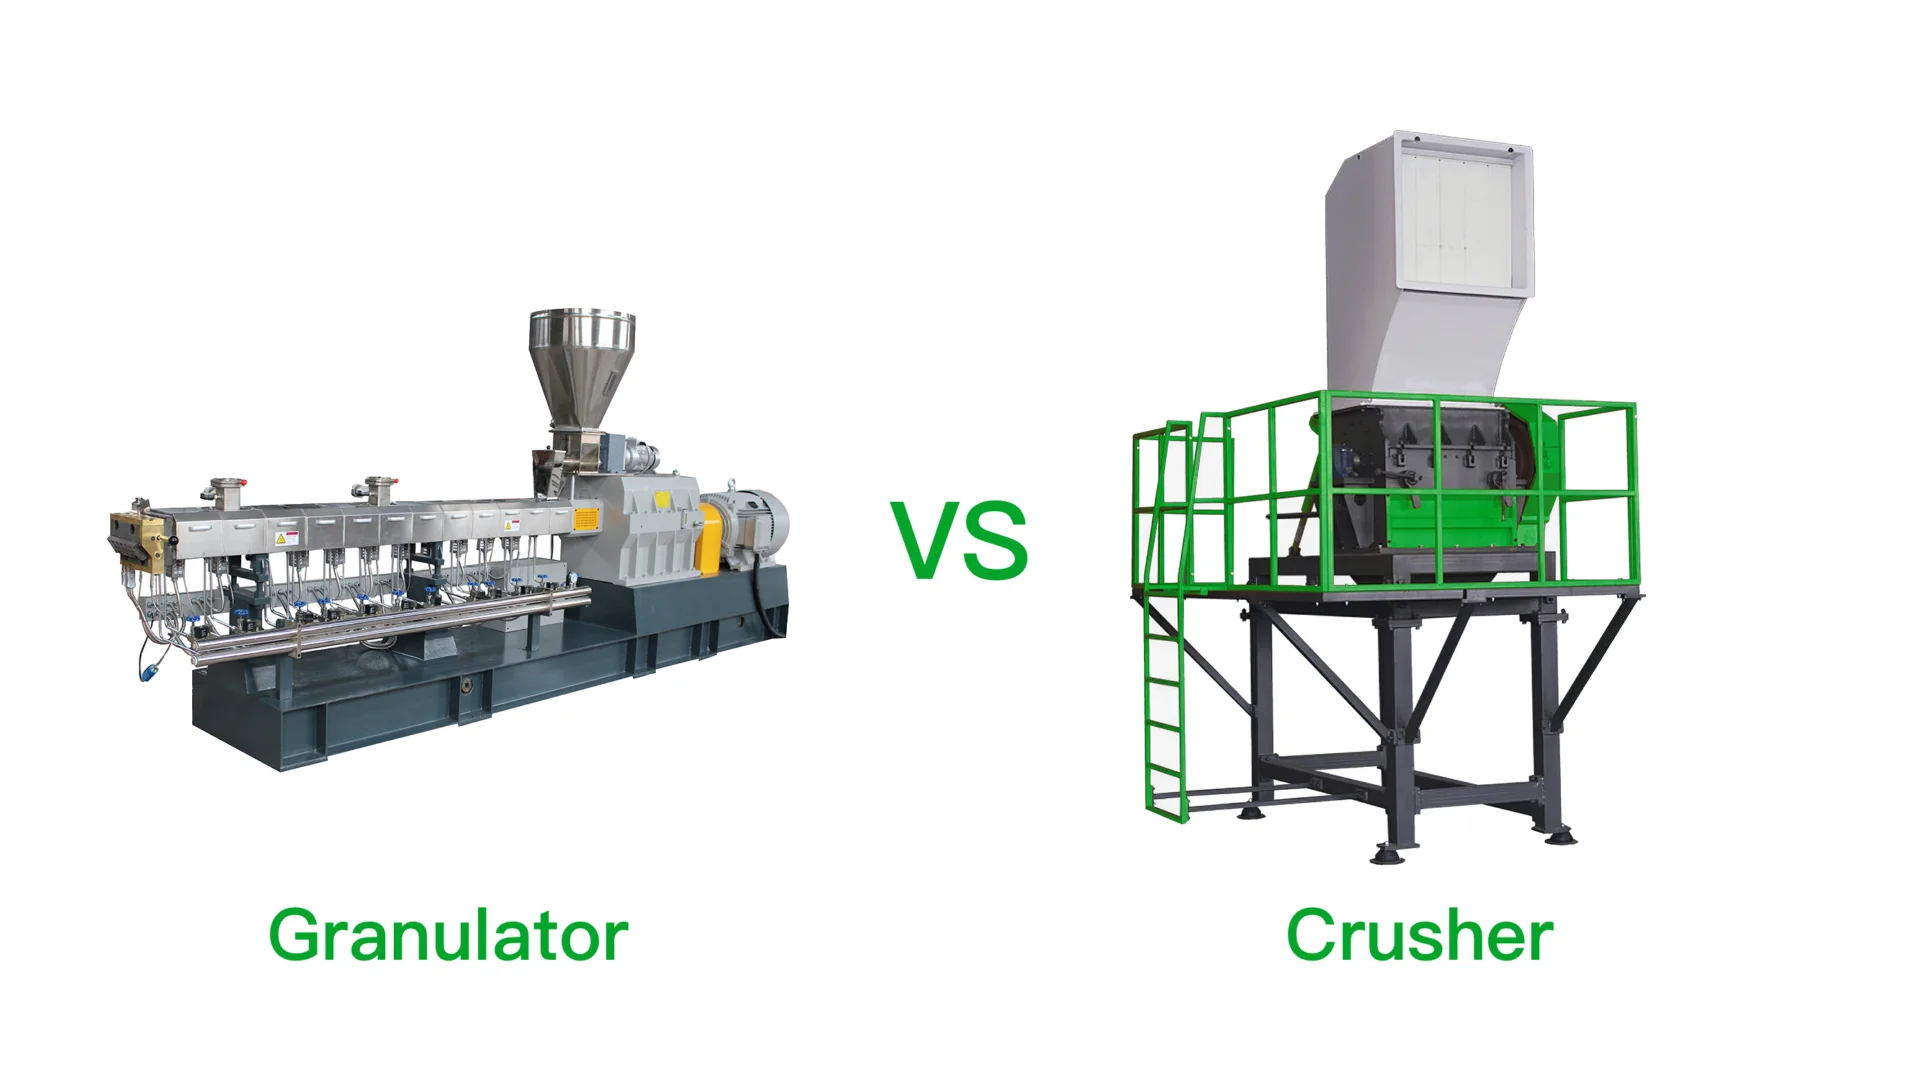 Obrázek ukazuje srovnání dvou typů průmyslových strojů: Granulátor a Drtič. Na levé straně obrázku je Granulátor, což je dlouhý, složitý stroj určený k řezání nebo drcení materiálu na menší kousky. Na pravé straně obrázku je Drtič, který je uzavřen v zelené bezpečnostní struktuře a slouží ke stlačování a rozbíjení materiálů na menší, zvládnutelné kousky. Text "vs" uprostřed navrhuje srovnání nebo hodnocení jejich funkcí nebo efektivnosti při zpracování materiálů.